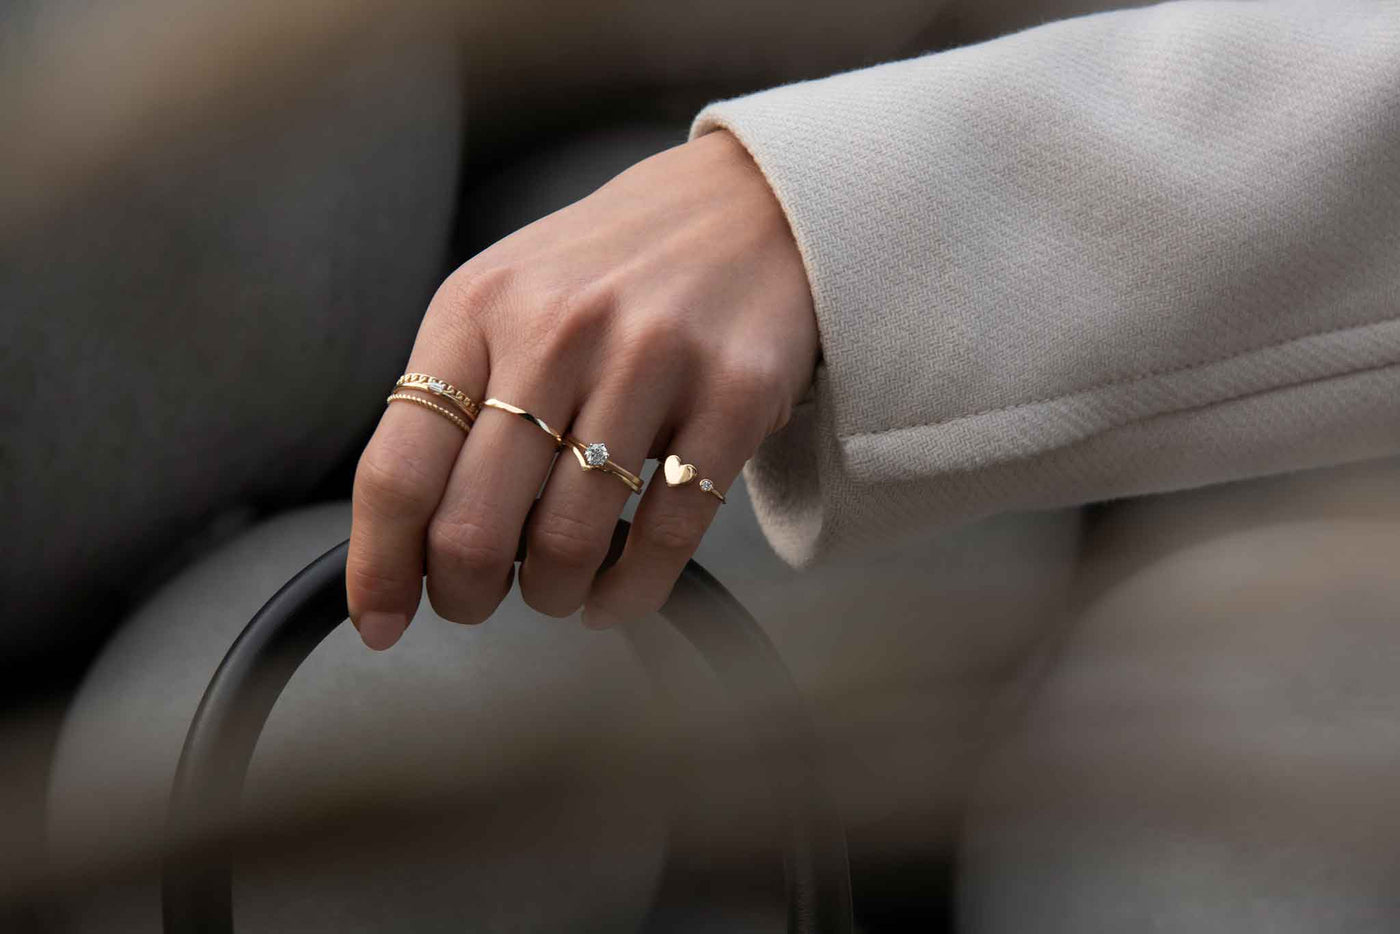 Die neue Goldwelt Gold- und Diamantkollektion 2021 ist eingetroffen. Wir lieben Ringe und haben besonders moderne und coole Gold- und Diamantringe kreiert. Entdecke sie jetzt auf www.goldwelt.at.   